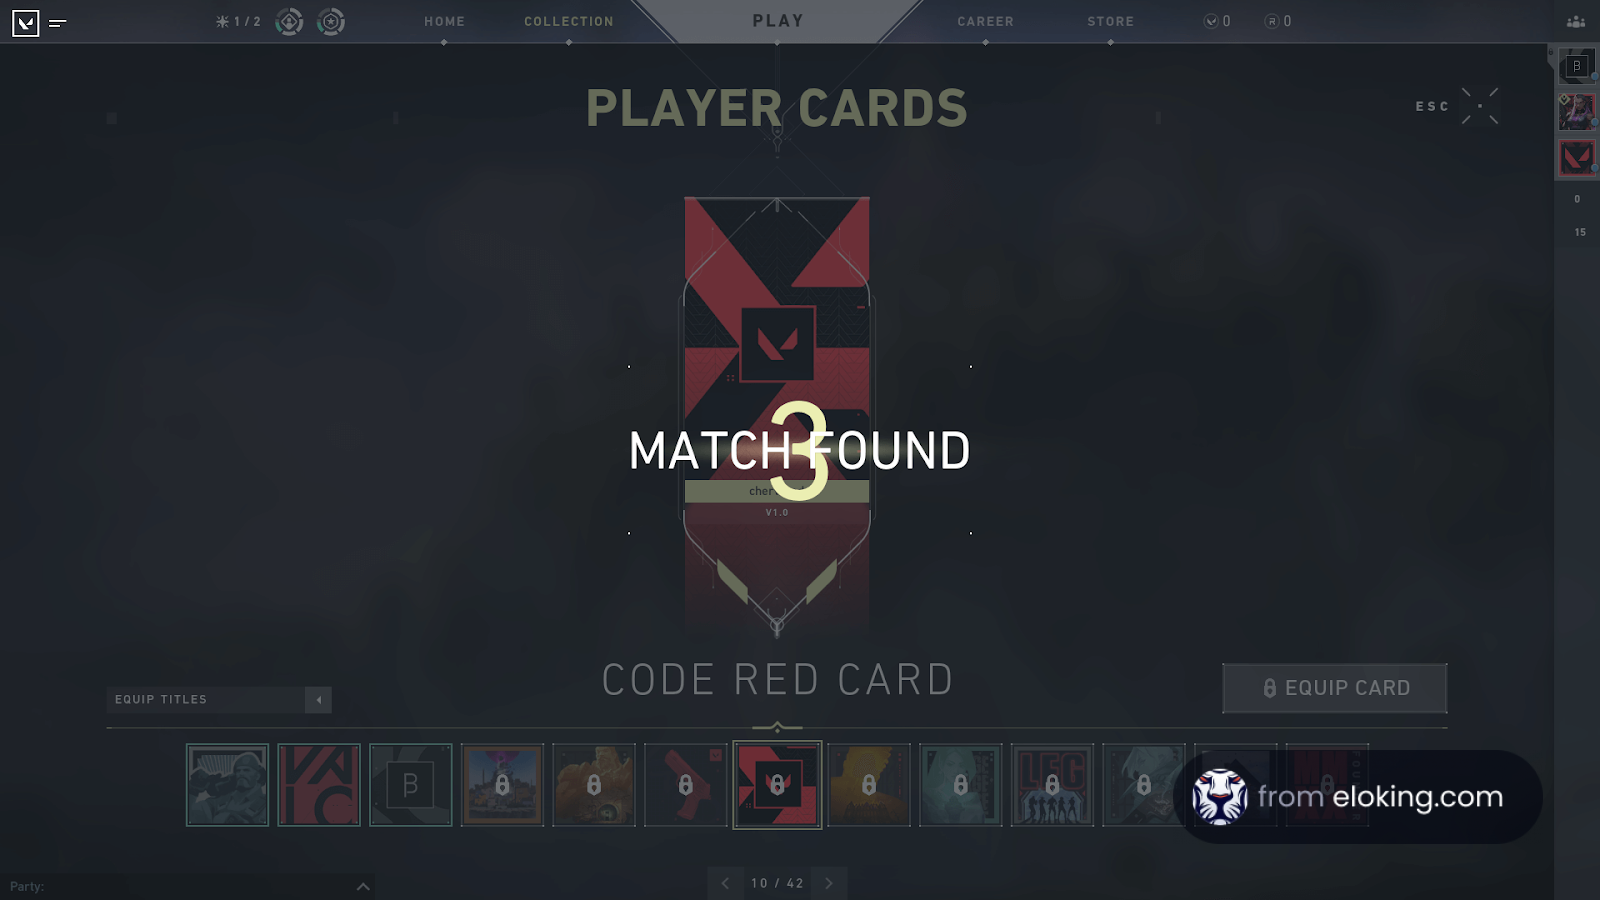 Zrzut ekranu z interfejsem gry pokazującym 'Znaleziono mecz' z kartami graczy